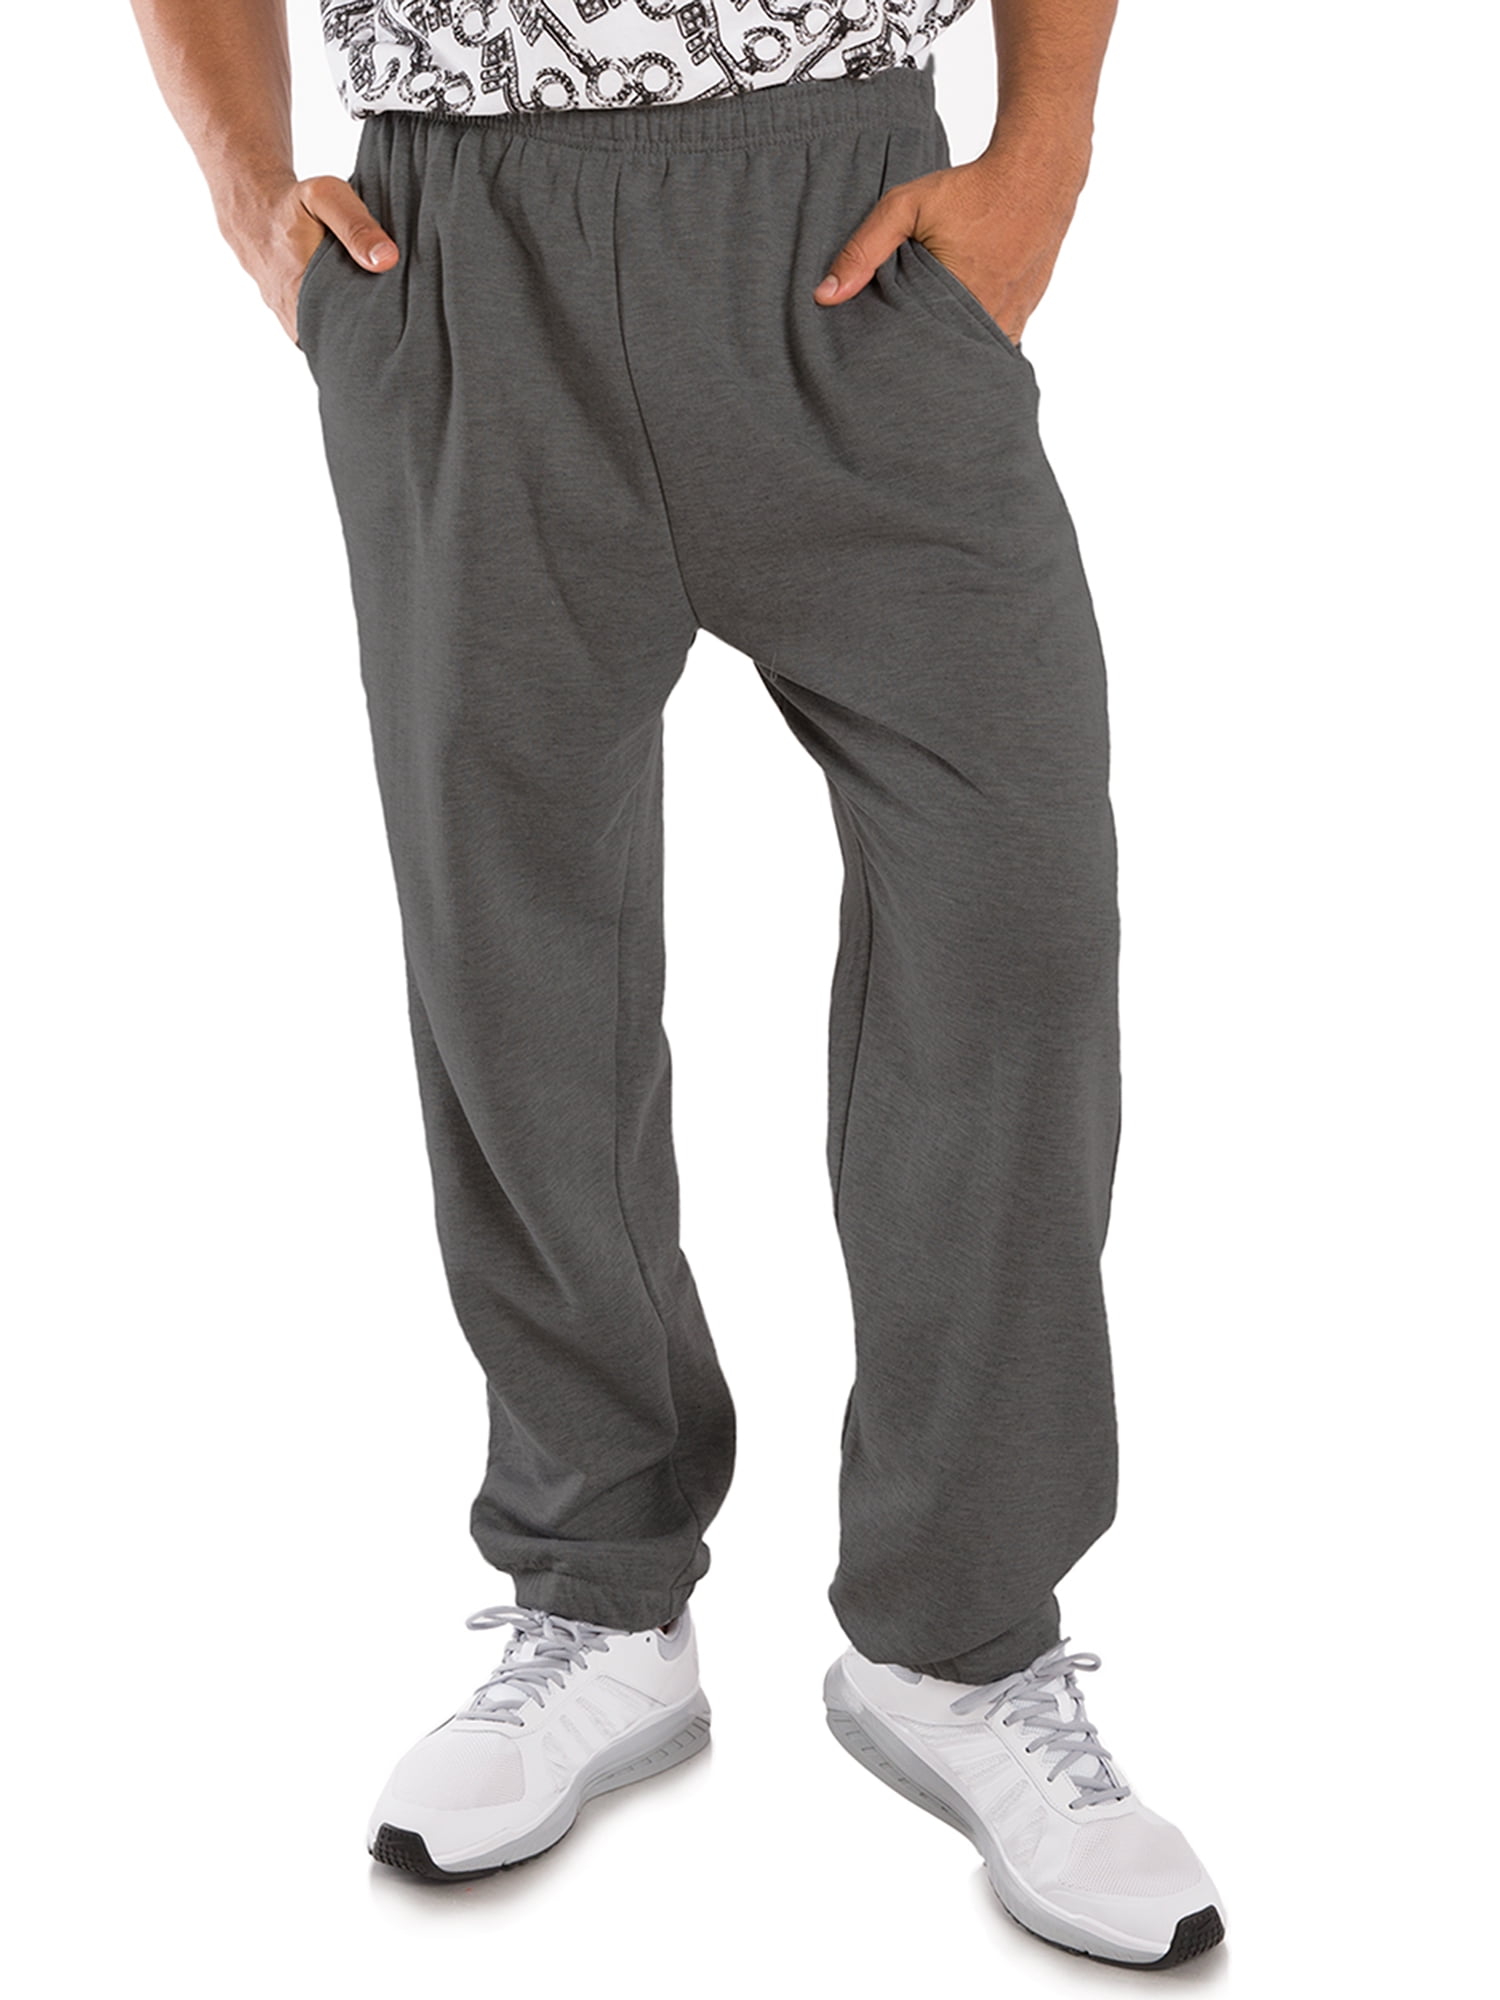 Vibes Men Fleece Sweatpants Elastic Leg Charcoal Small - Walmart.com